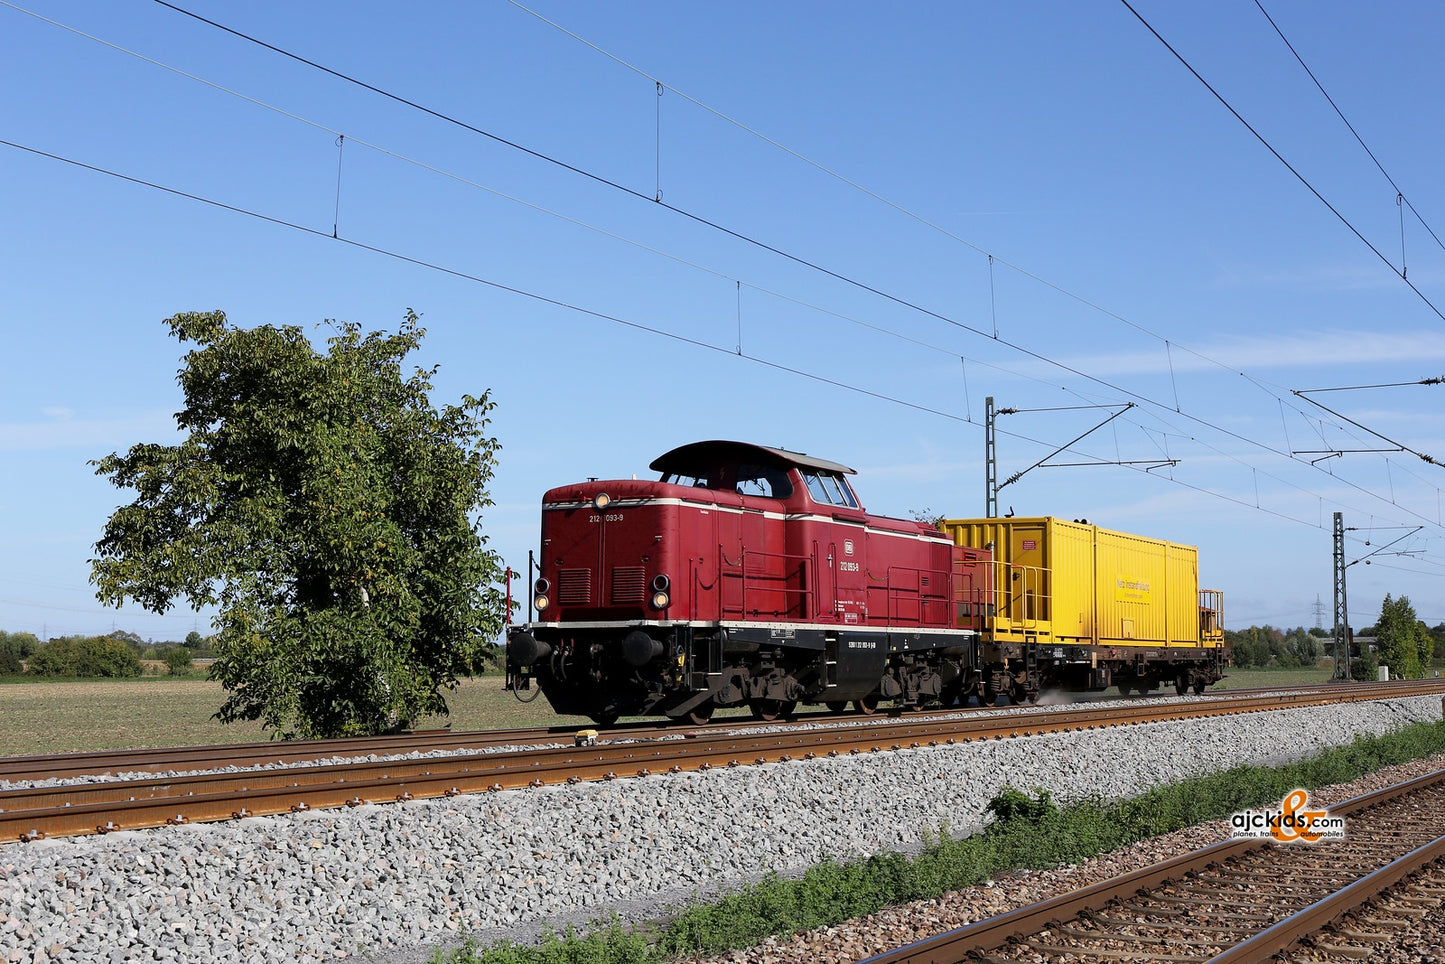 Marklin 37009 - Class 212 Diesel Locomotive